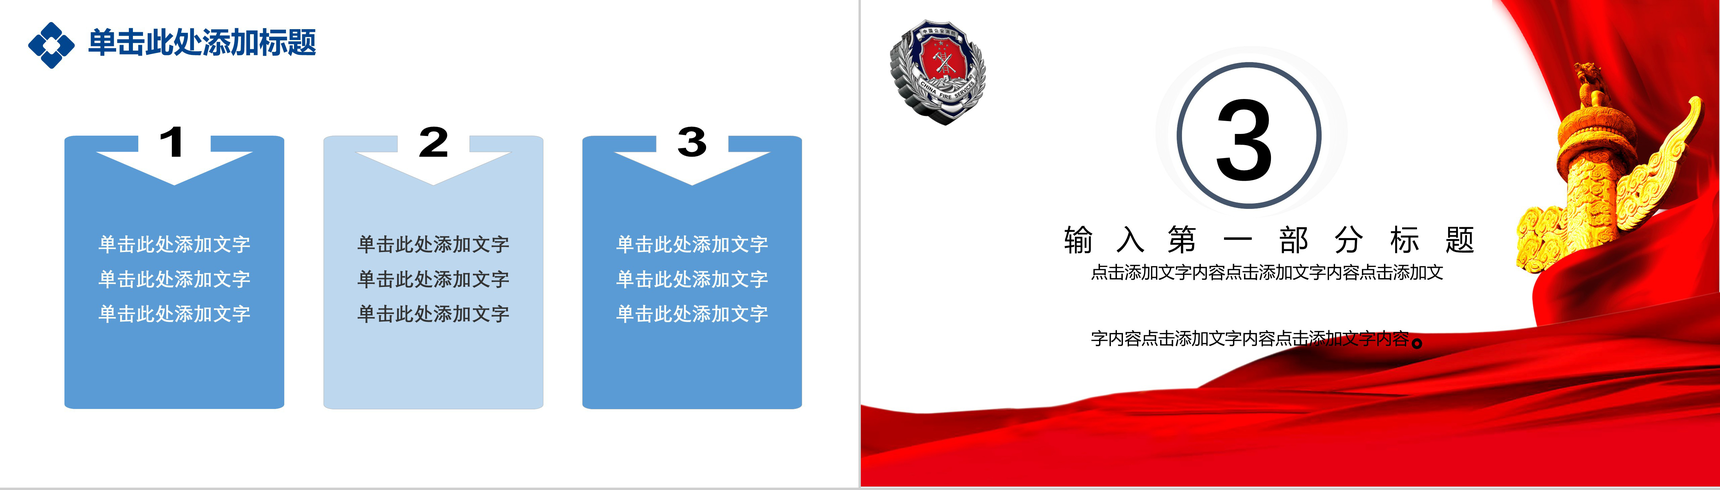 消防安全年终总结工作报告PPT模板-6